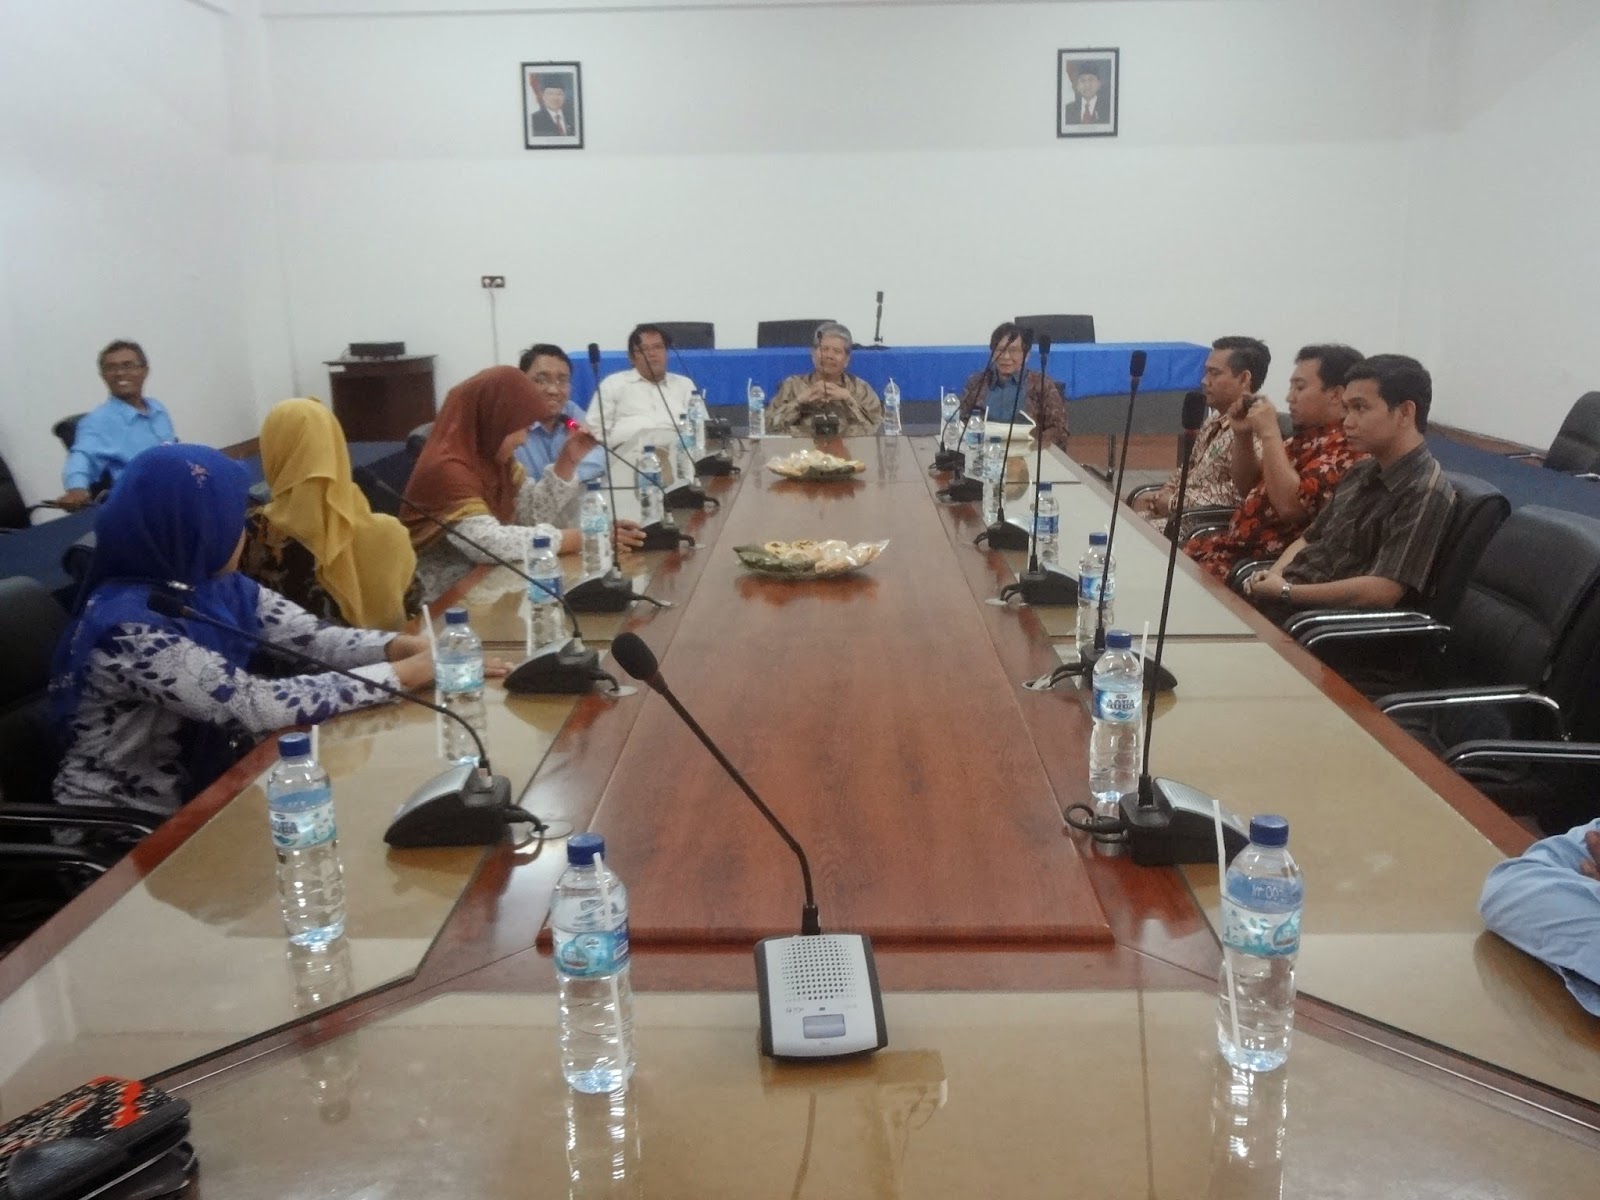 M Si Universitas Negeri Yogyakarta UNY Alhamdulillah setelah visitasi tersebut dilakukan akhirnya hasil akreditasi program studi Pendidikan IPA